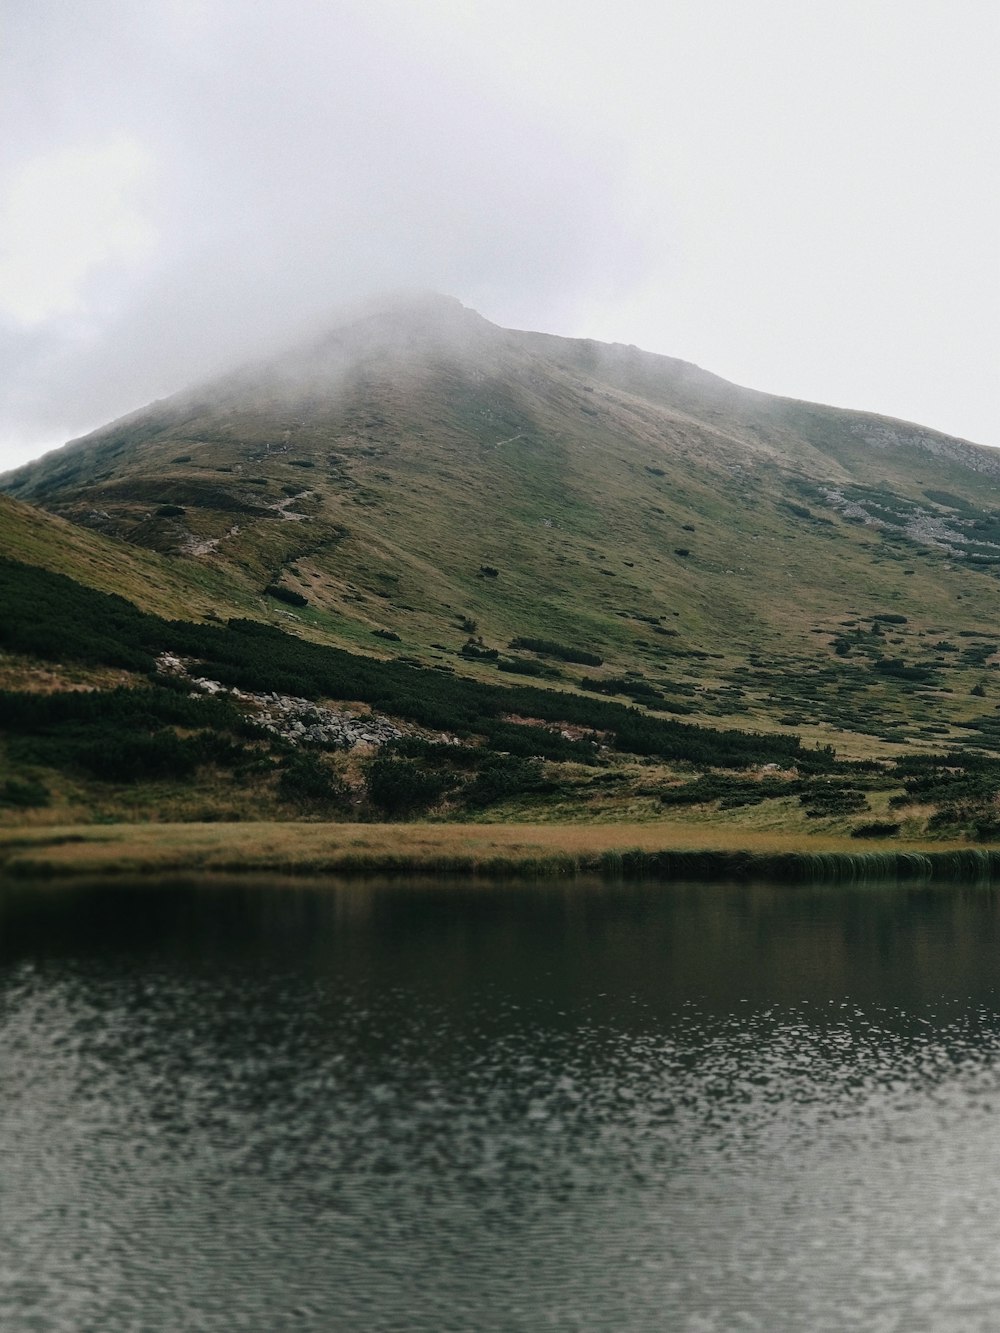 Montaña verde y marrón junto al lago